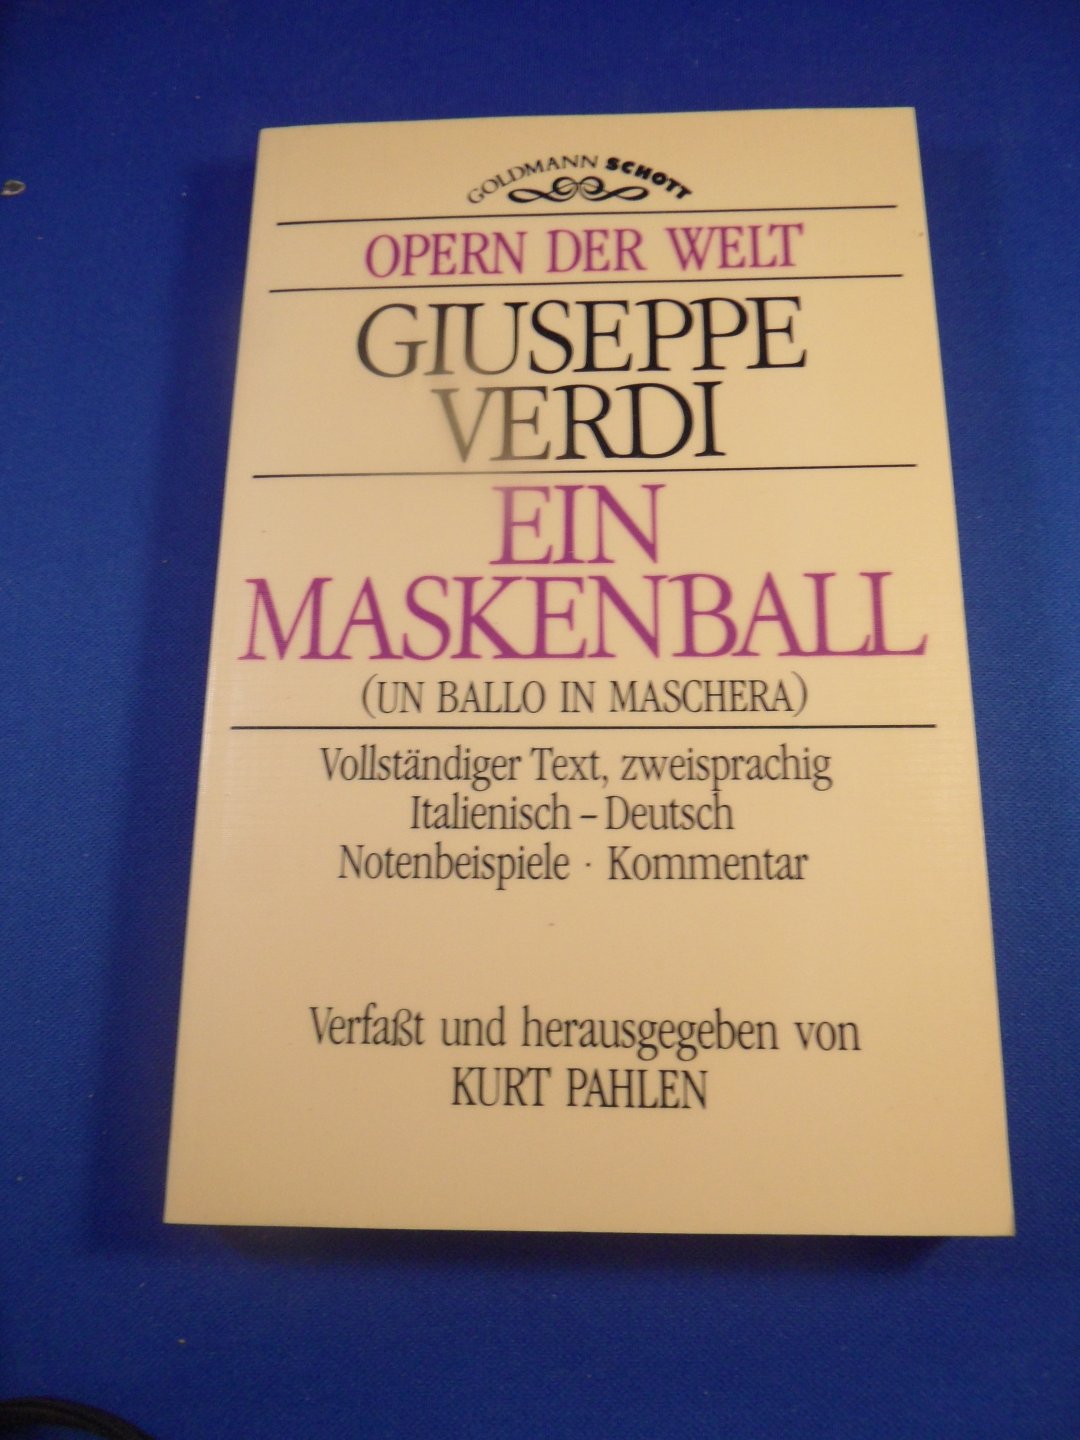 Verdi, G. - Ein Maskenball